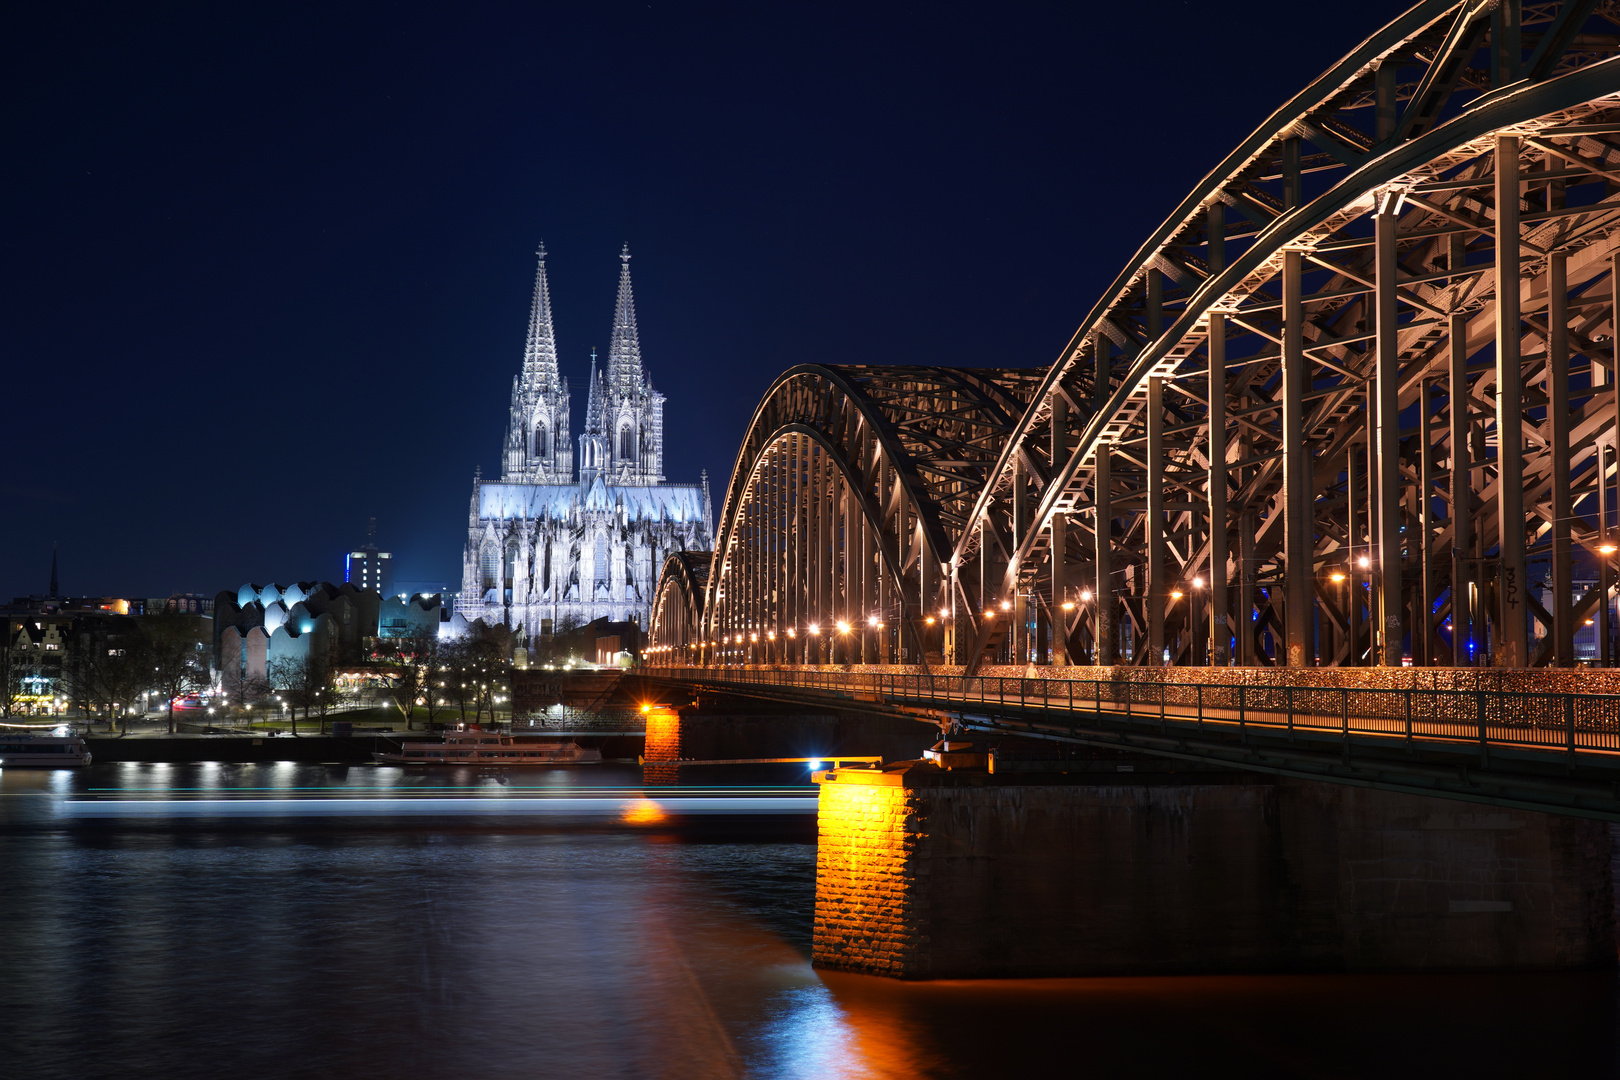 Das Wahrzeichen von Köln